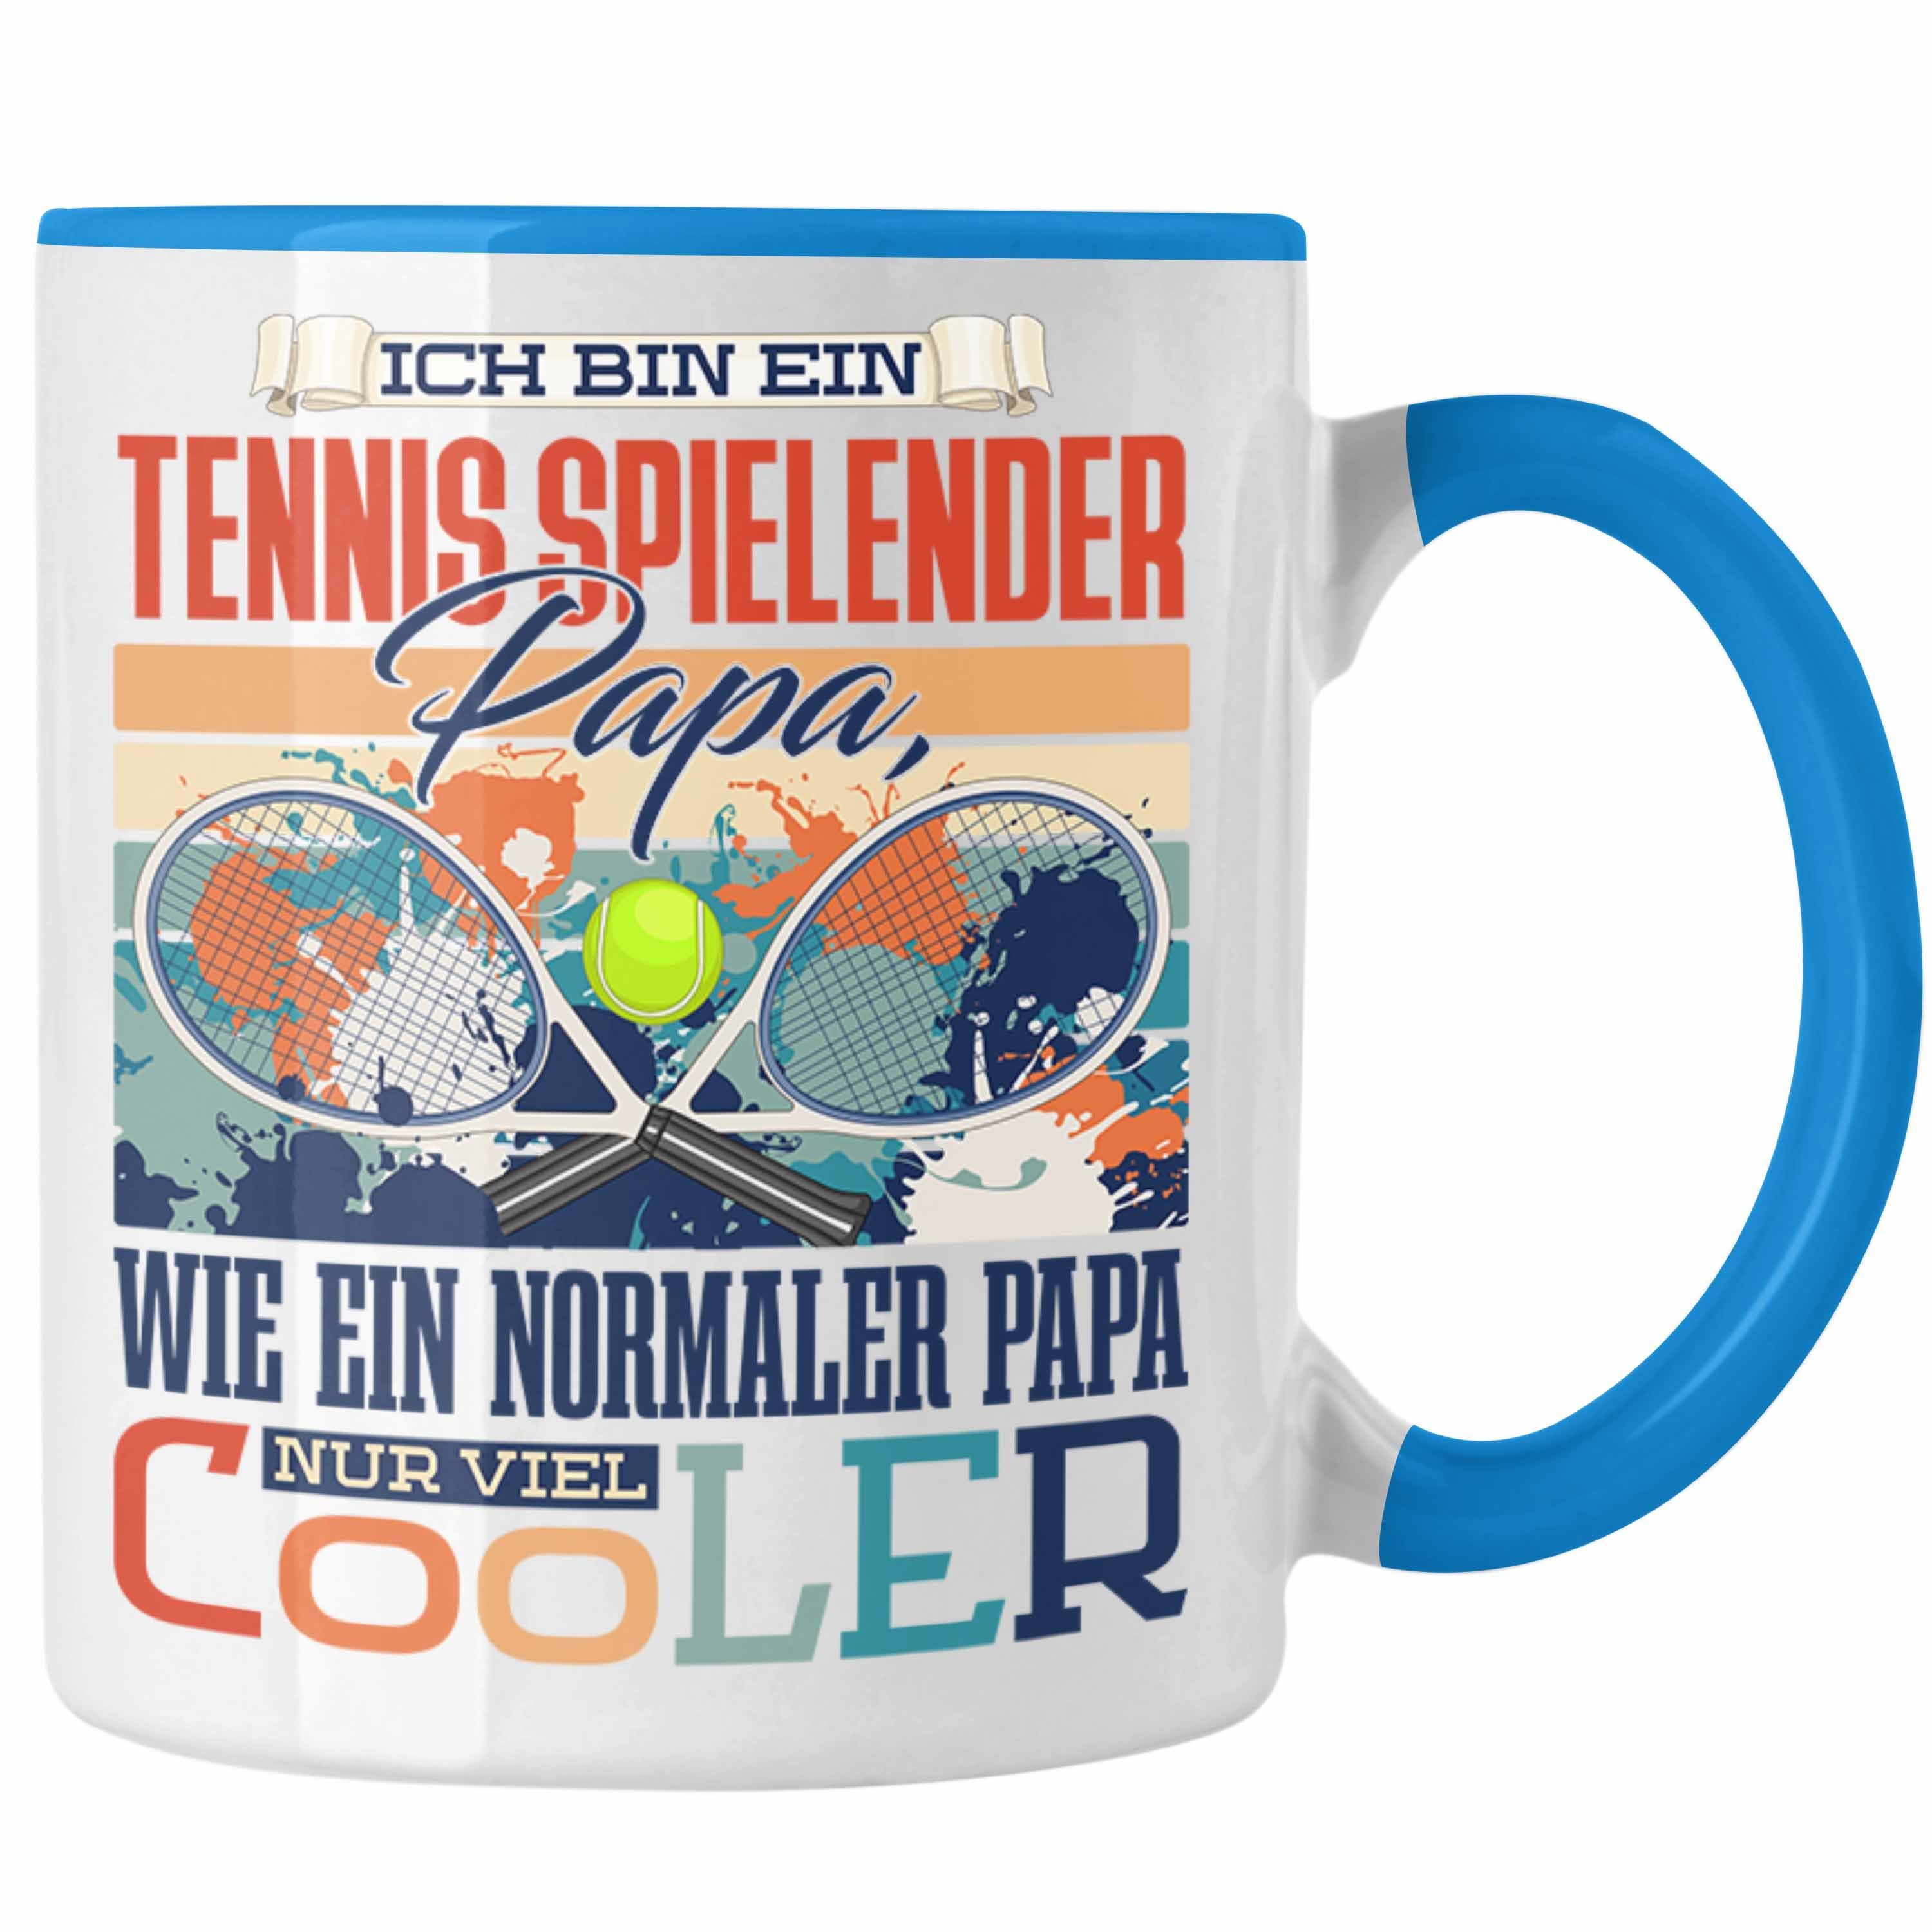 Papa Trendation - Trendation Tasse Tasse Blau Geschenkidee zum Geschenk Tennis Vater Vaterta